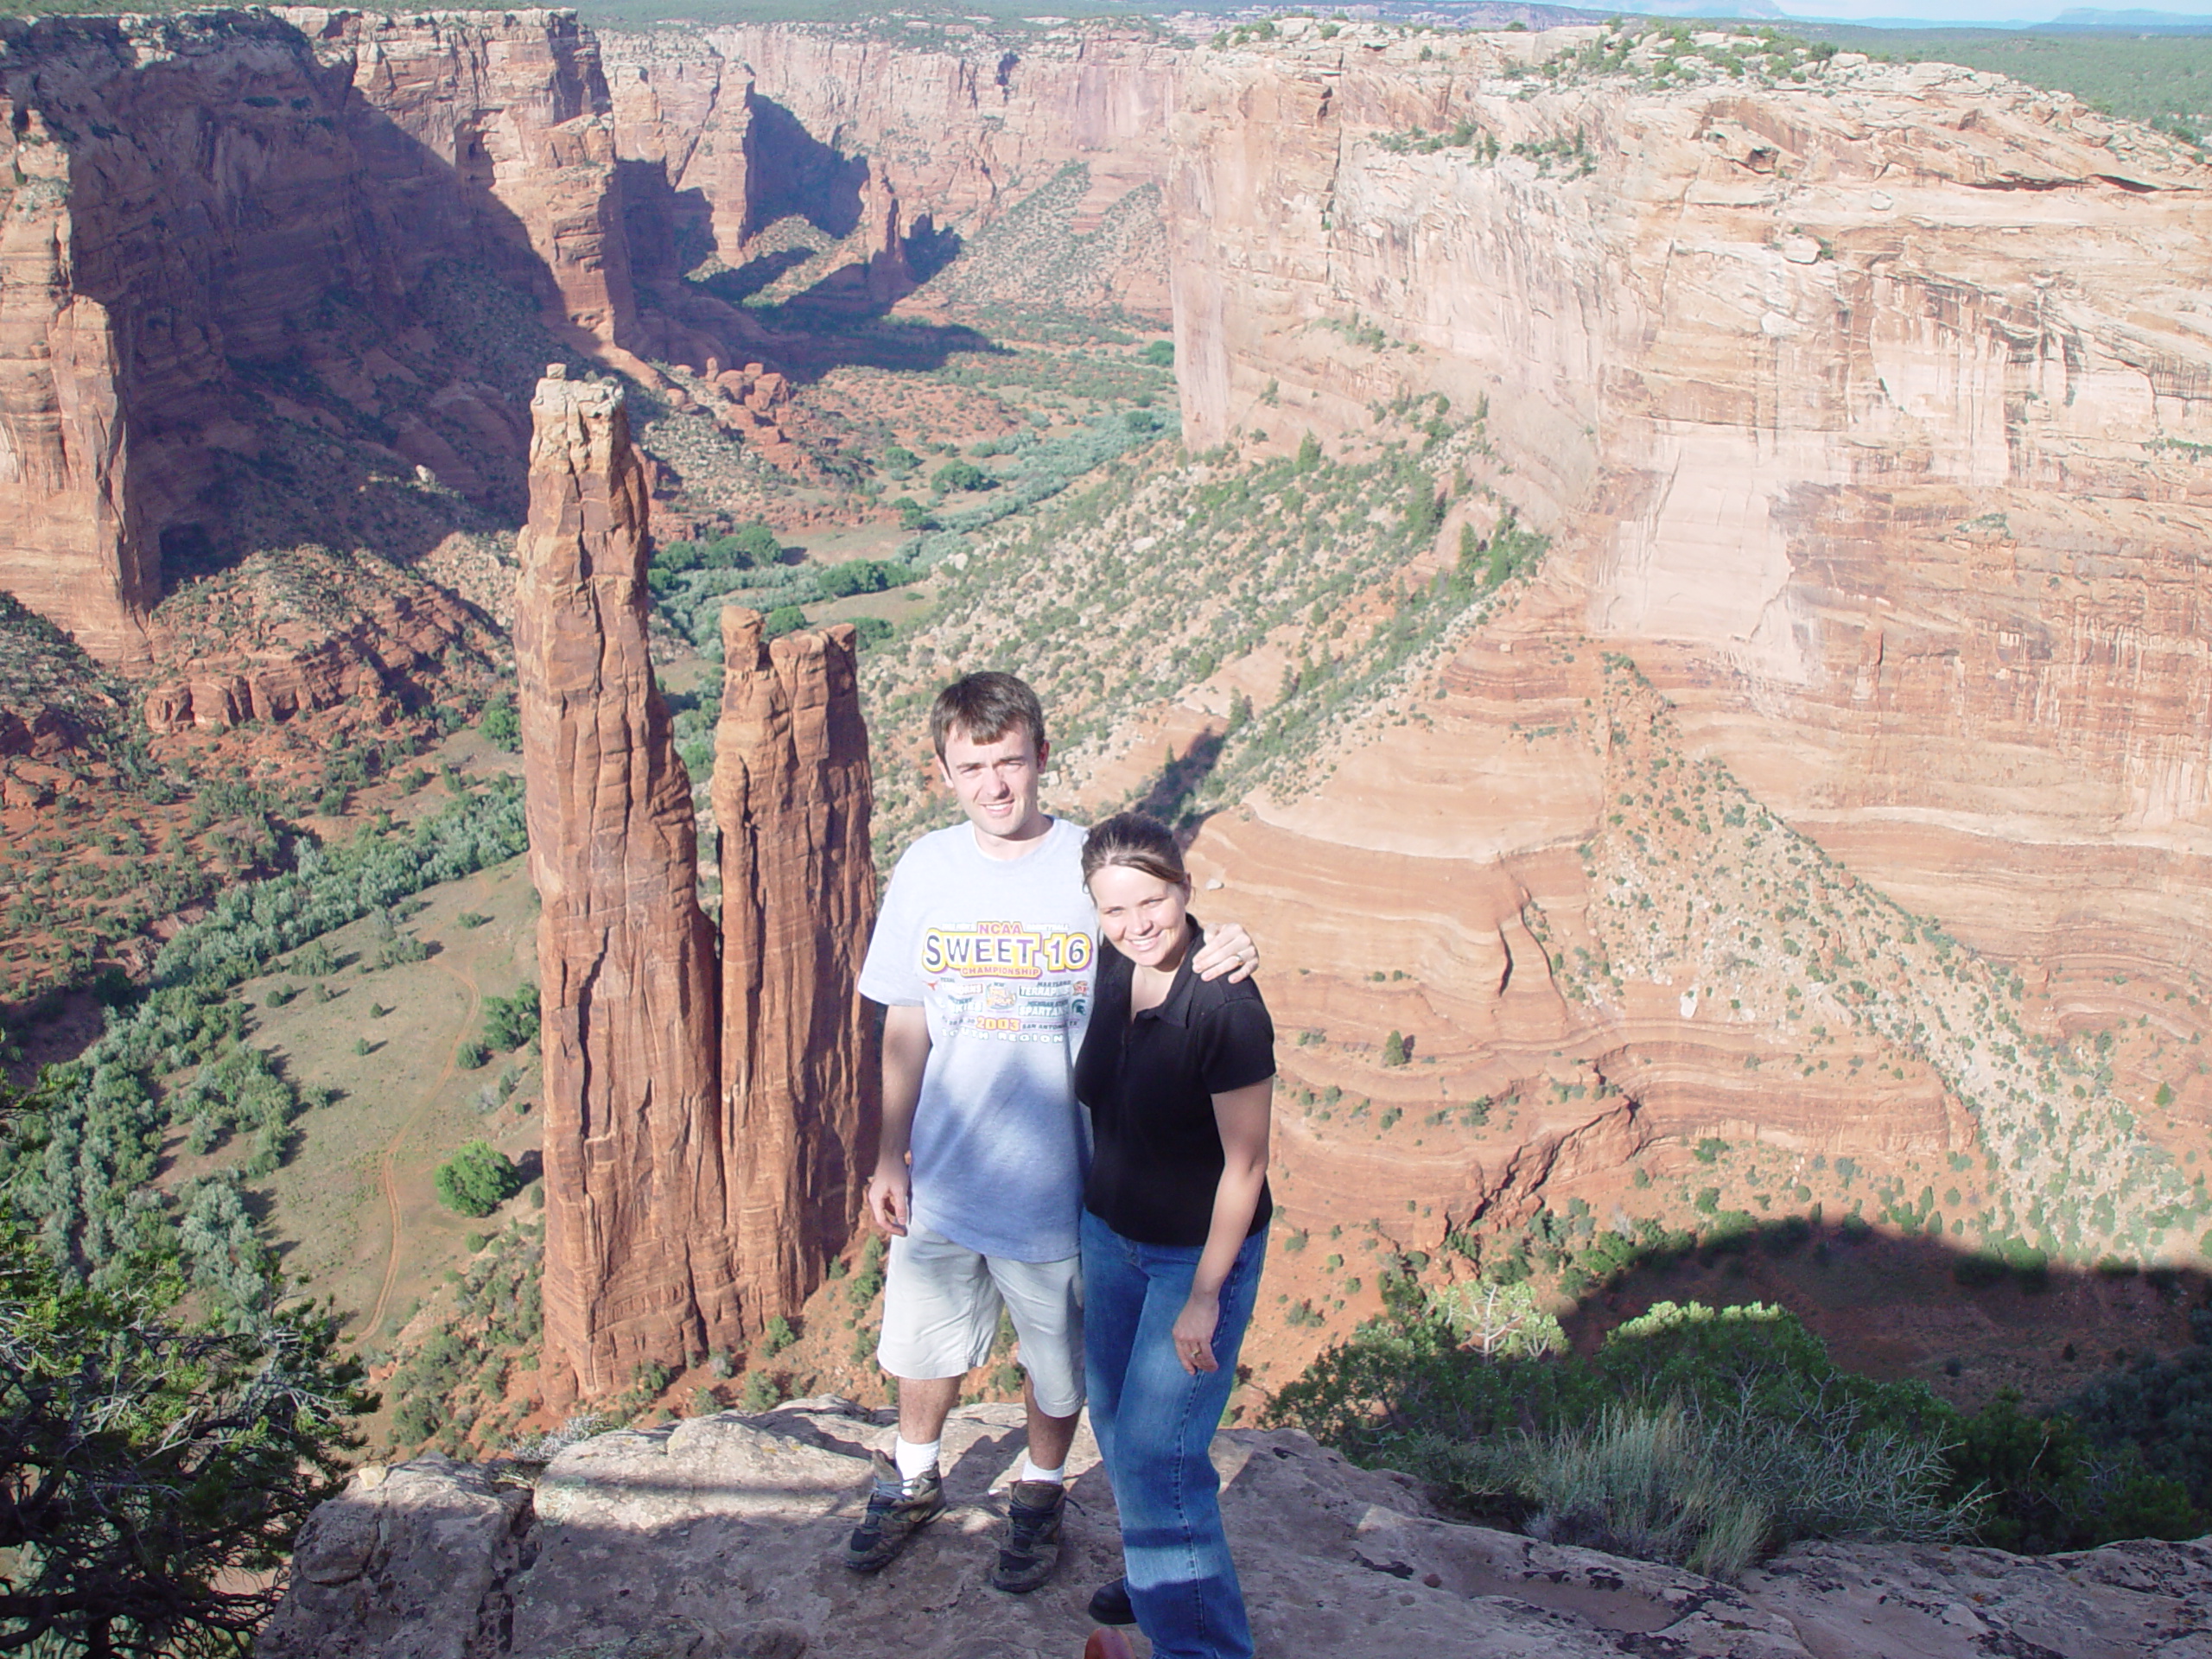 Summer 2003 - Canyon de Chelly